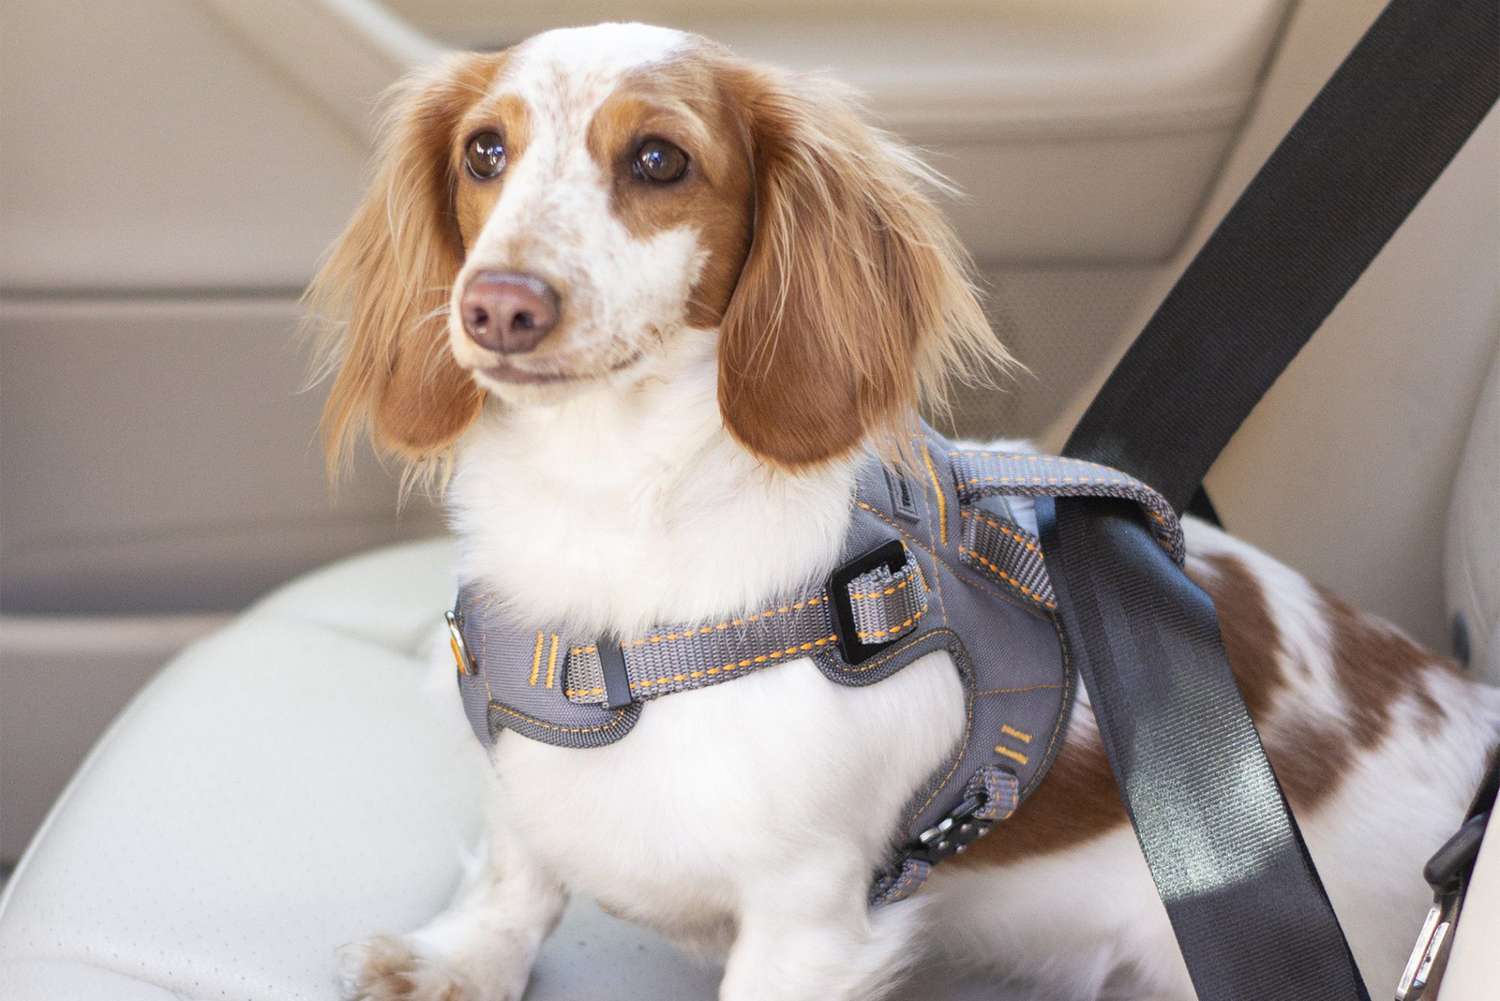 Hot Adjustable Dog Pet Car Safety Seat Belt Harness Restraint Lead Travel Leash 